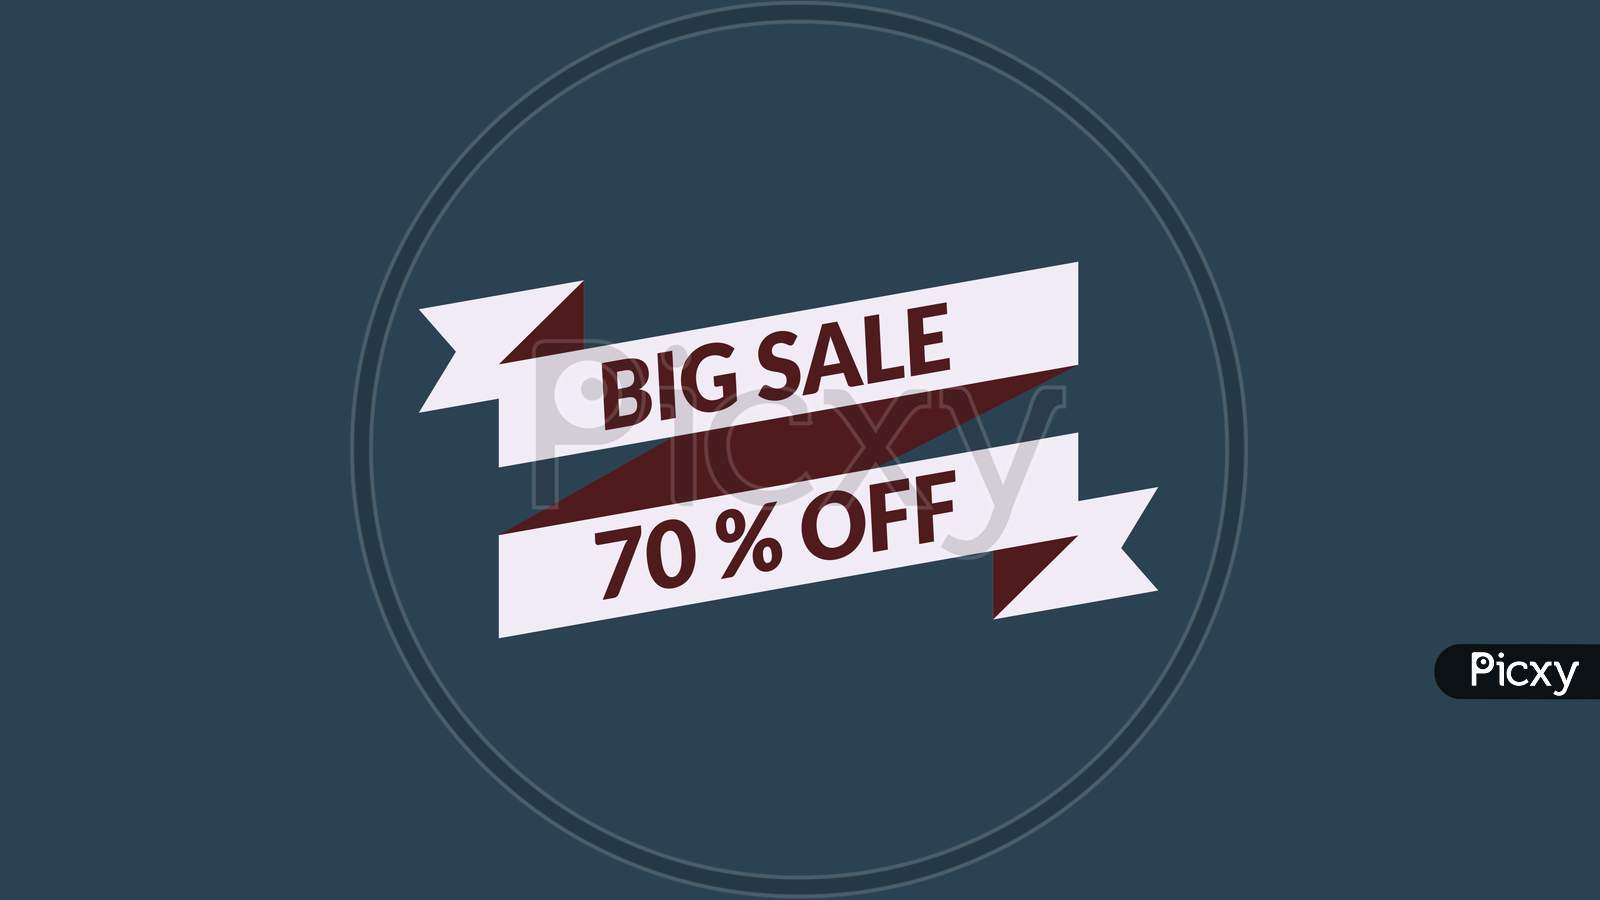 Big Sale 70% Off Word Illustration Use For Landing Page,Website, Poster, Banner, Flyer,Sale Promotion,Advertising, Marketing